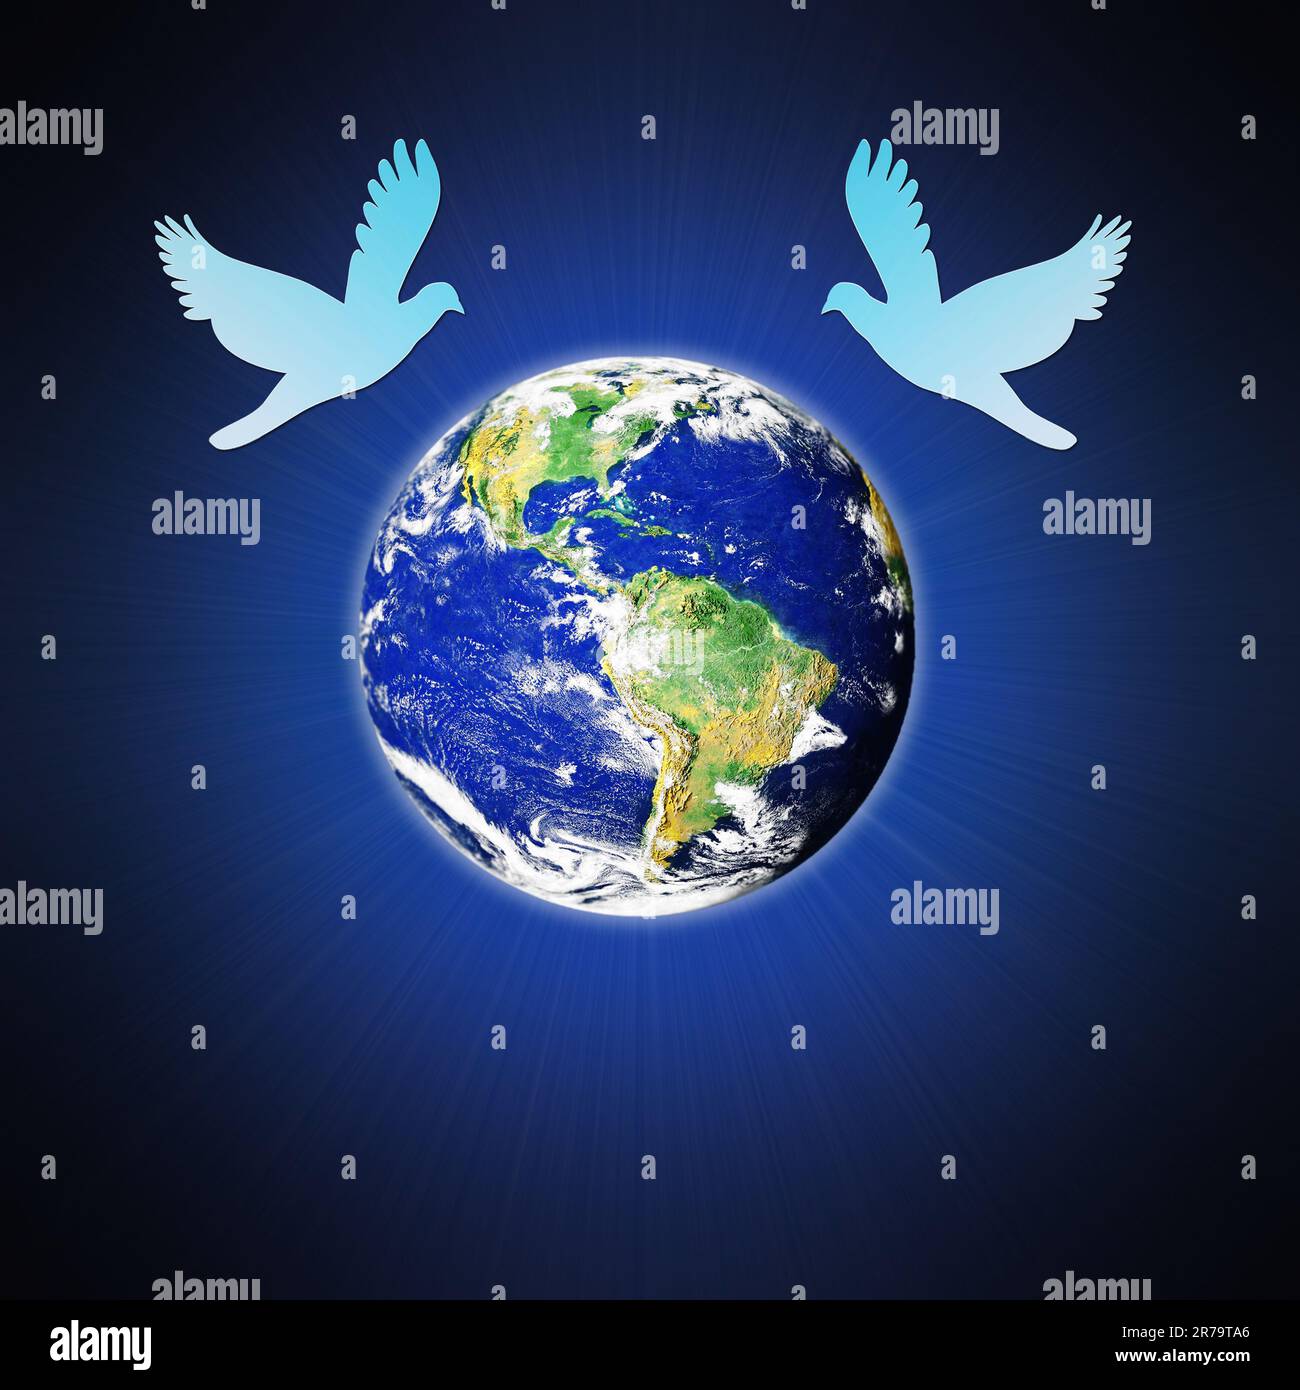 les colombes de la paix survolent la terre - illustration du symbole de la paix Banque D'Images